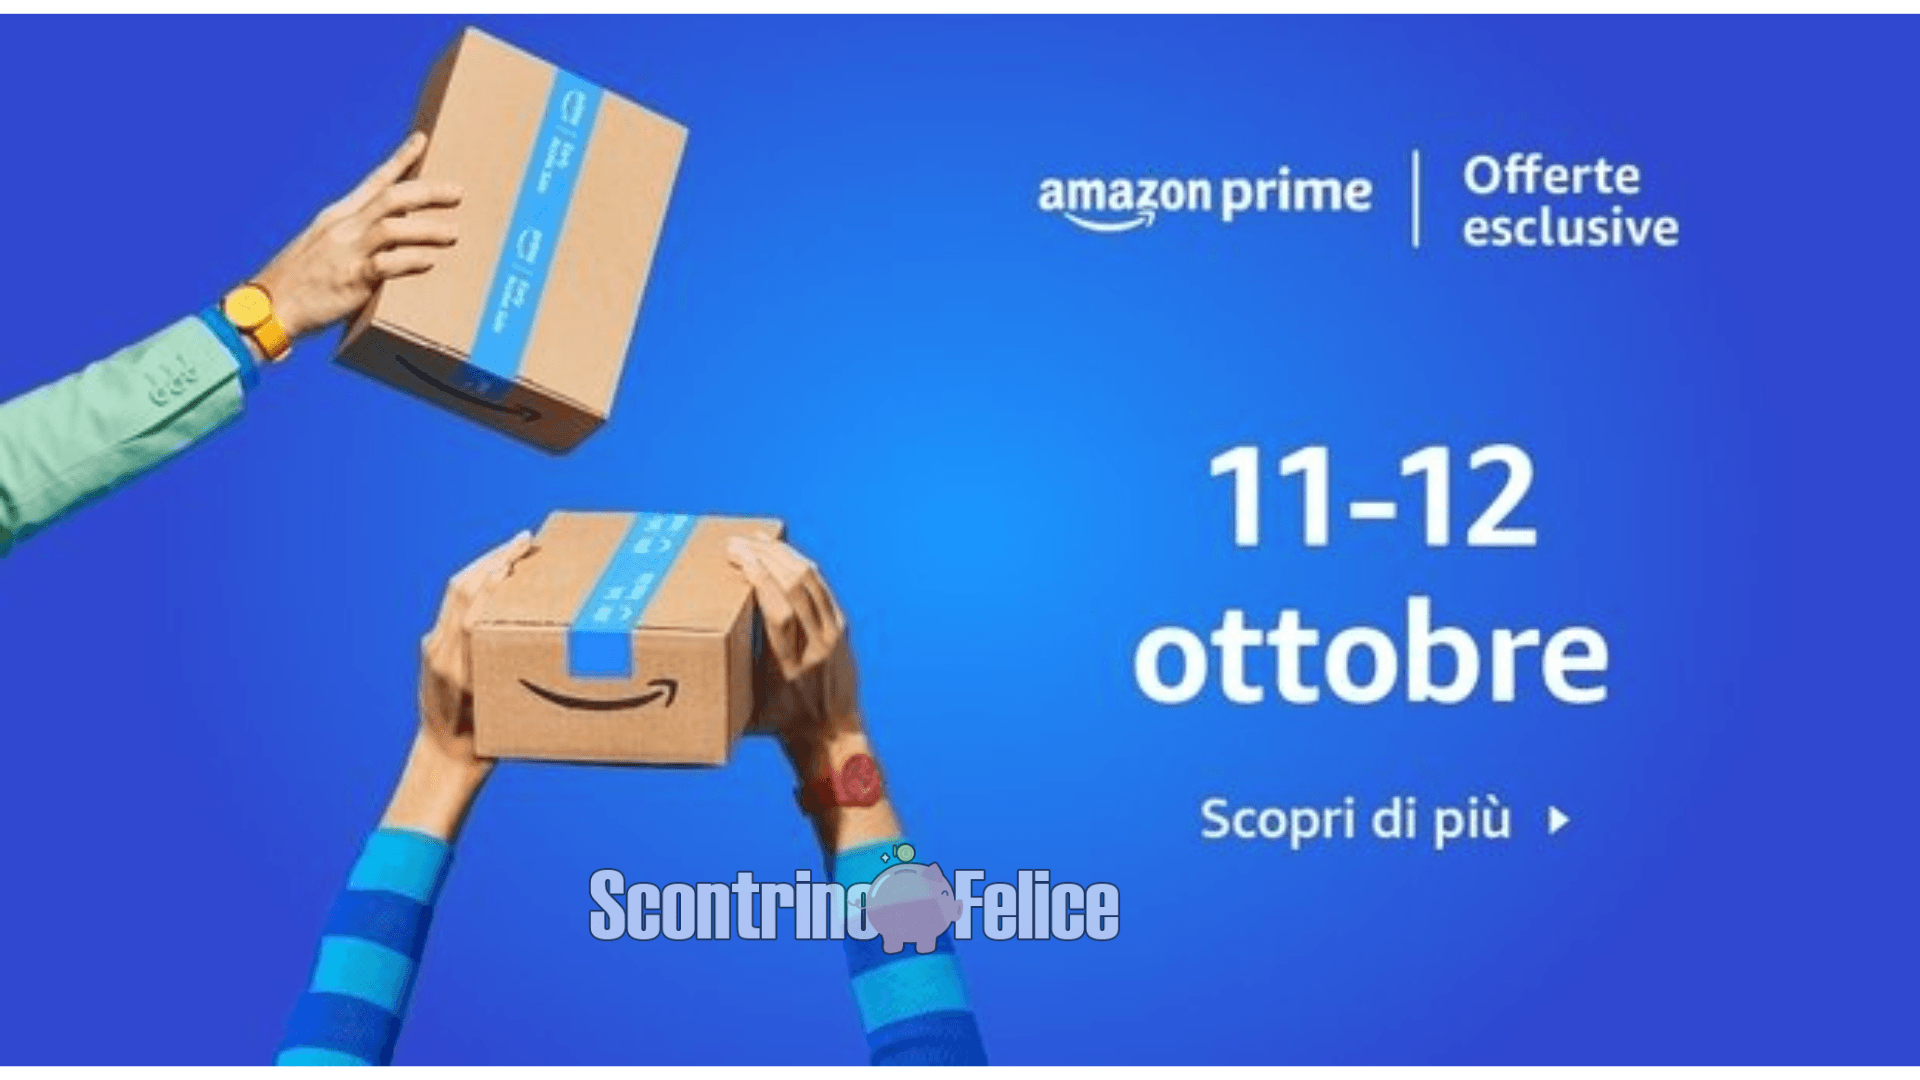 Offerte esclusive Amazon Prime 11-12 ottobre 2022: scopriamo le migliori! 6